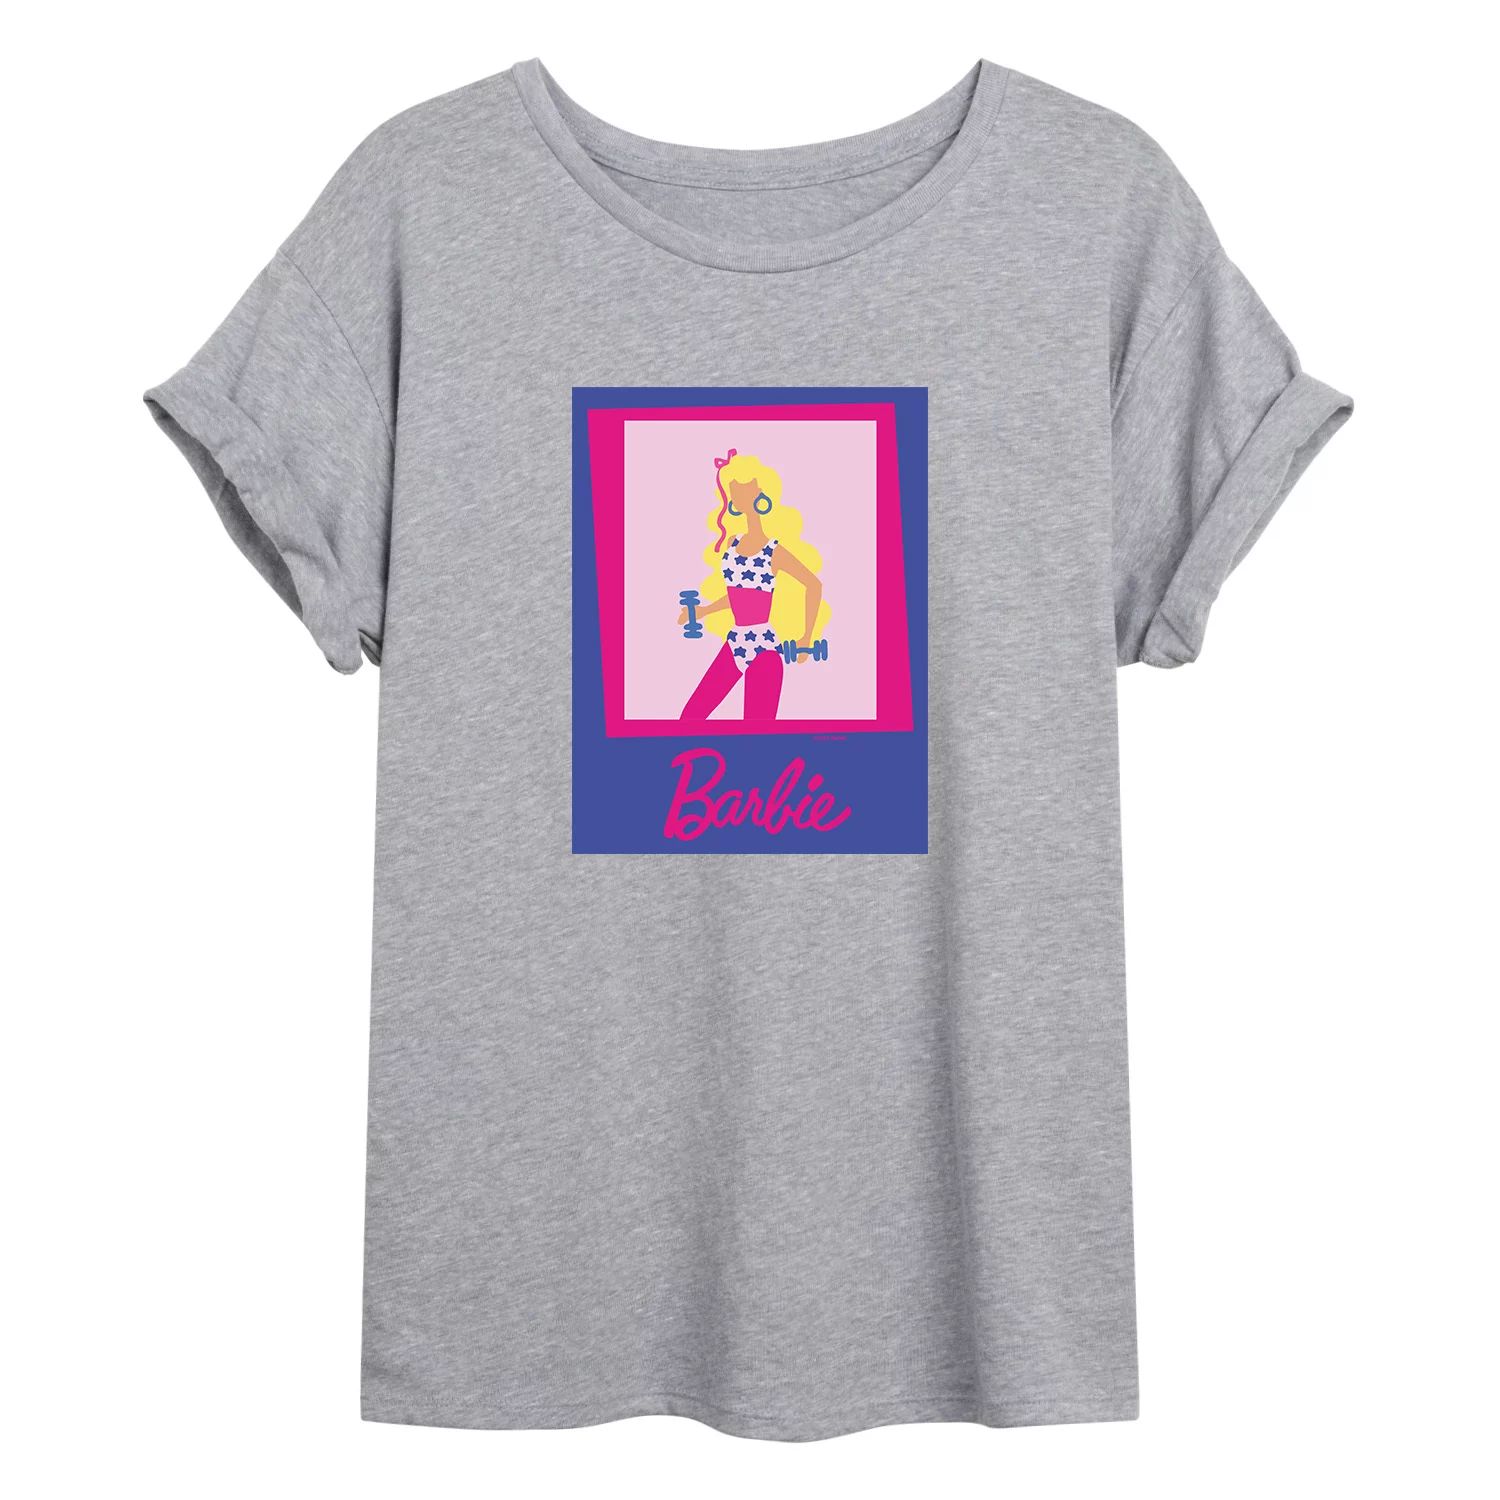 Футболка с рисунком Барби для фитнеса для юниоров Licensed Character футболка с рисунком барби малибу для юниоров licensed character